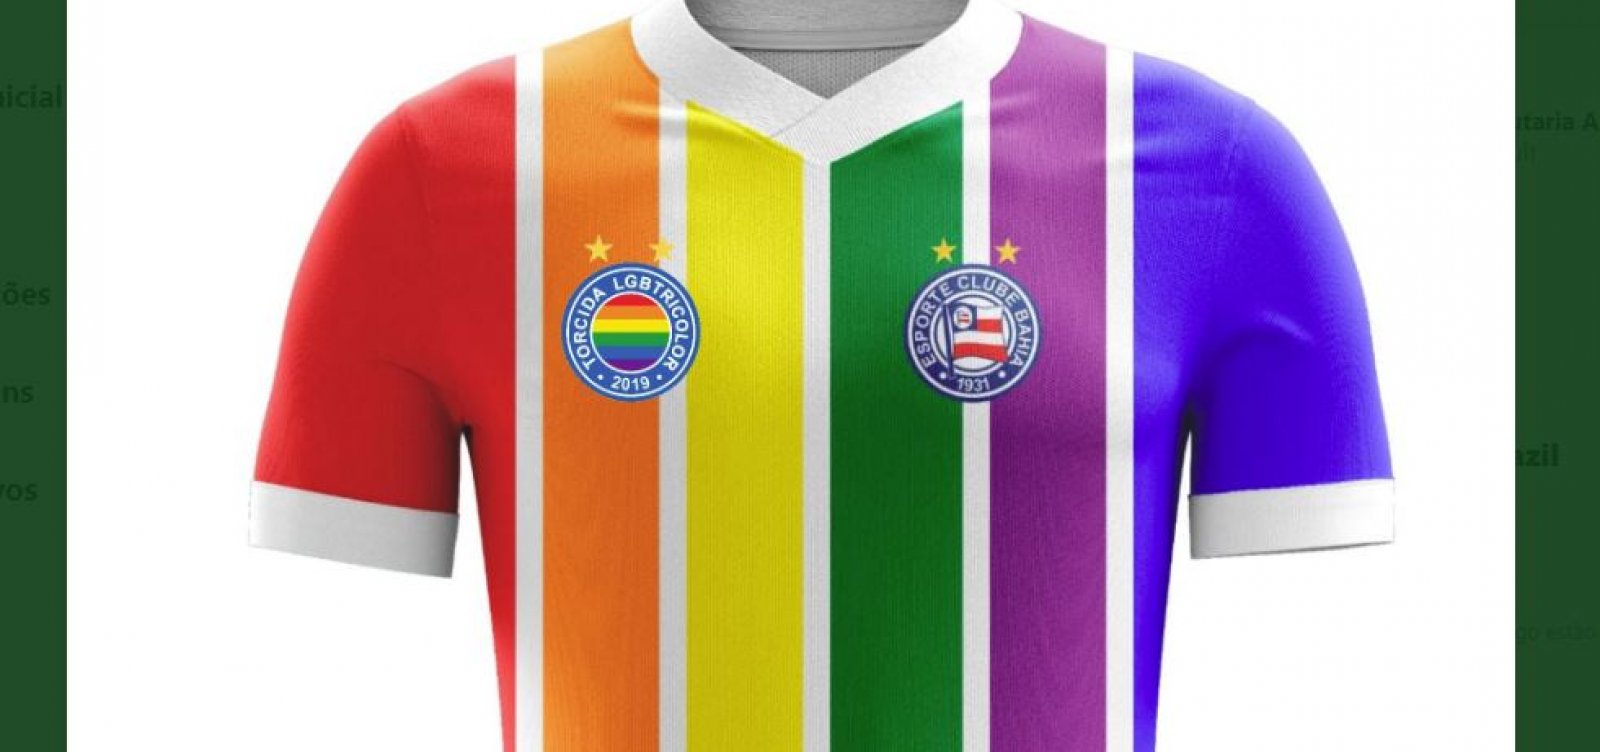 Com apoio do clube, torcida faz camisa LGBT para o Bahia